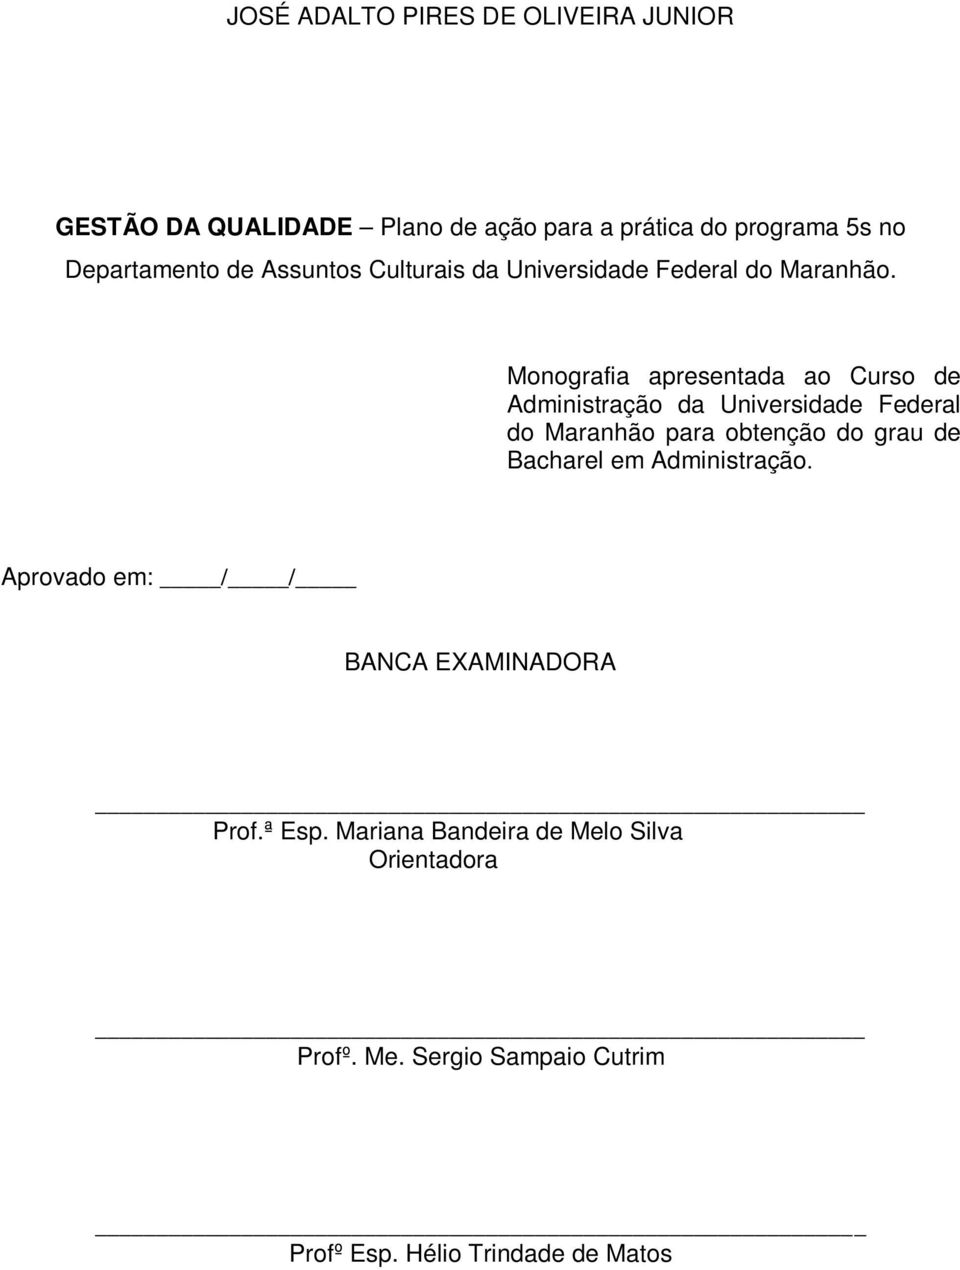 Monografia apresentada ao Curso de Administração da Universidade Federal do Maranhão para obtenção do grau de